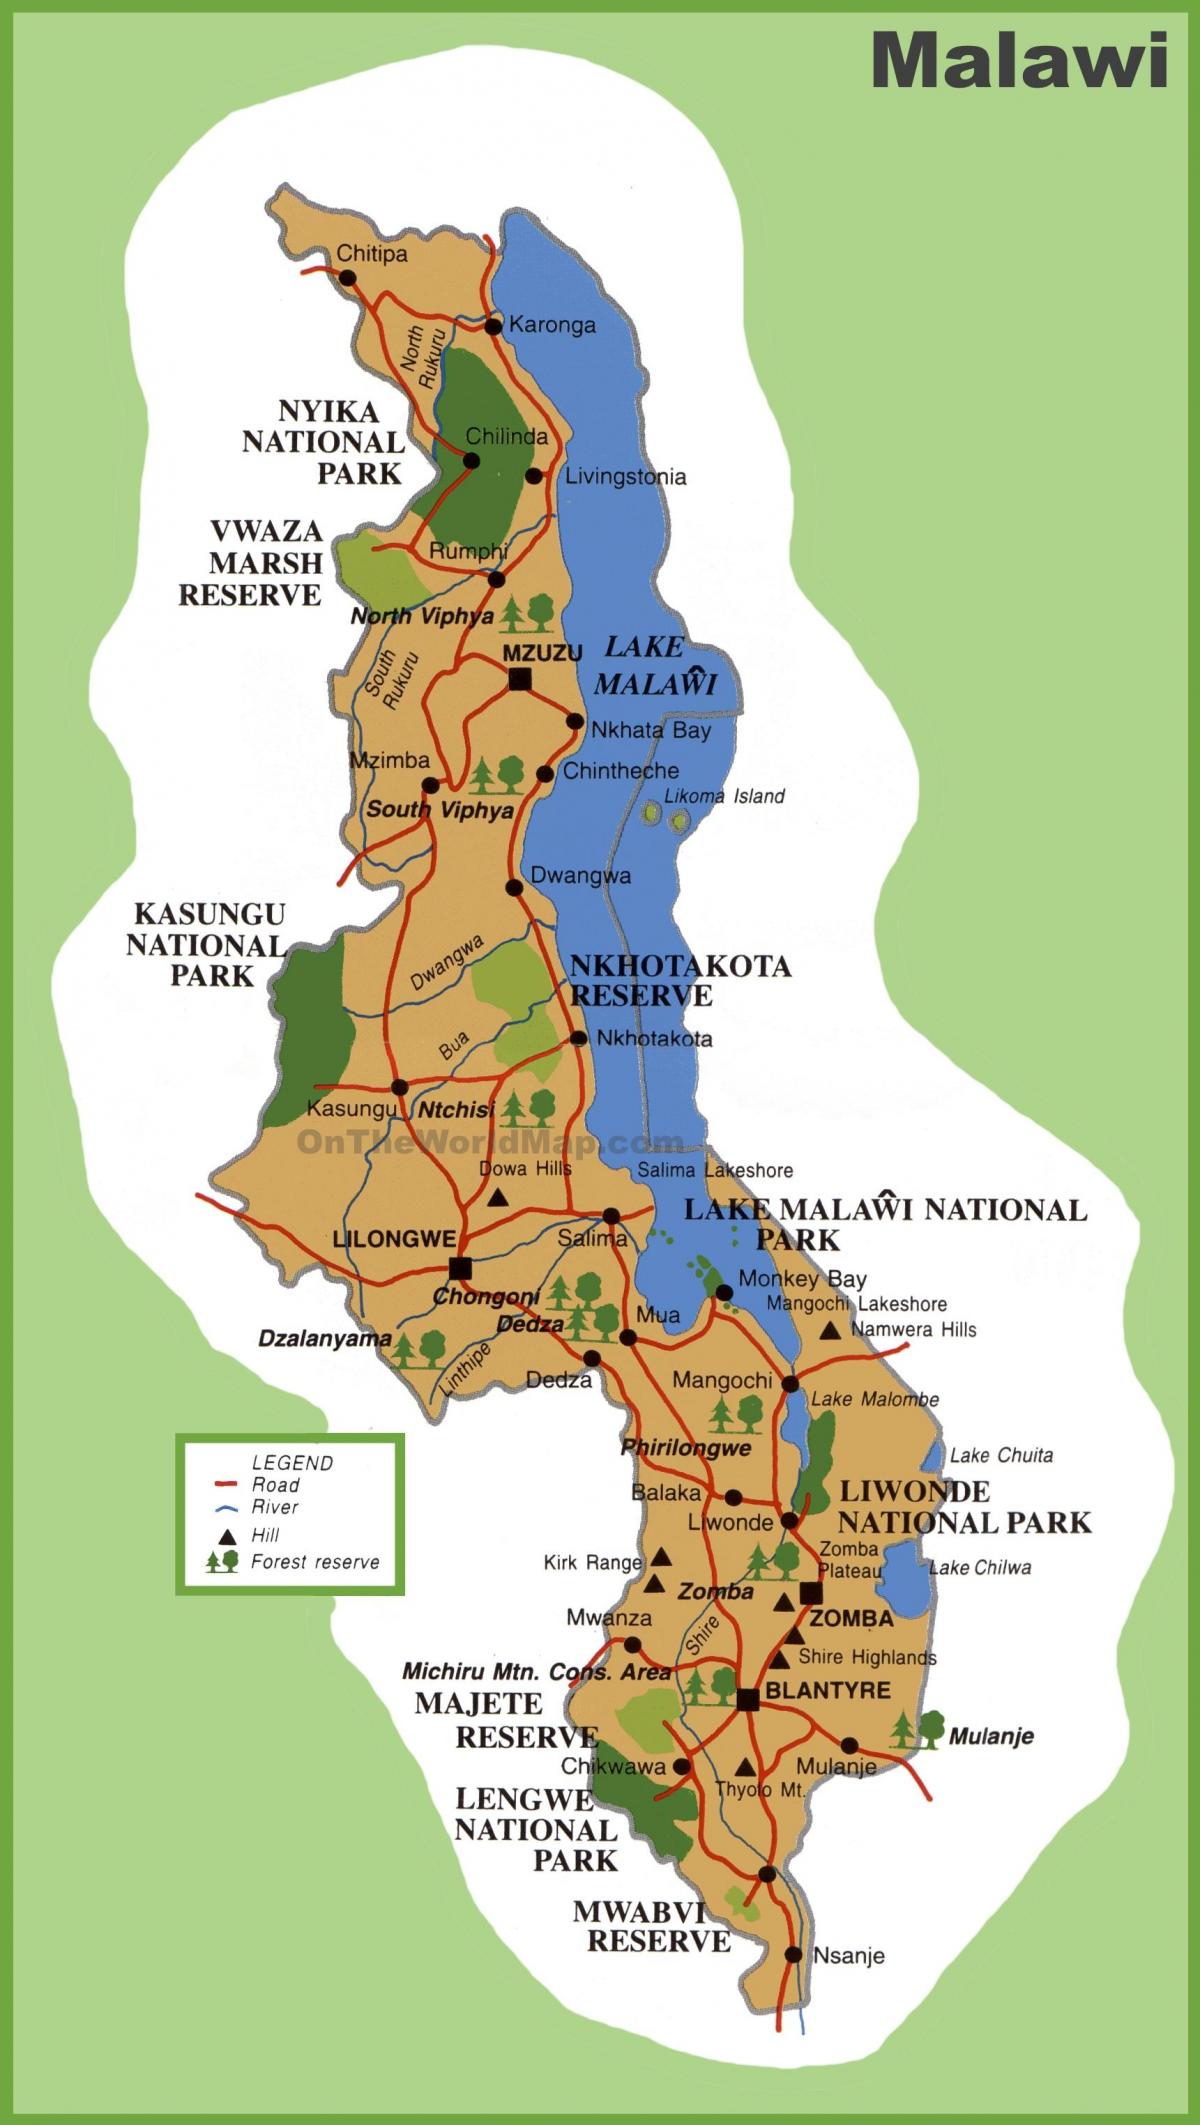 zemljevid Malavija in okoliških državah